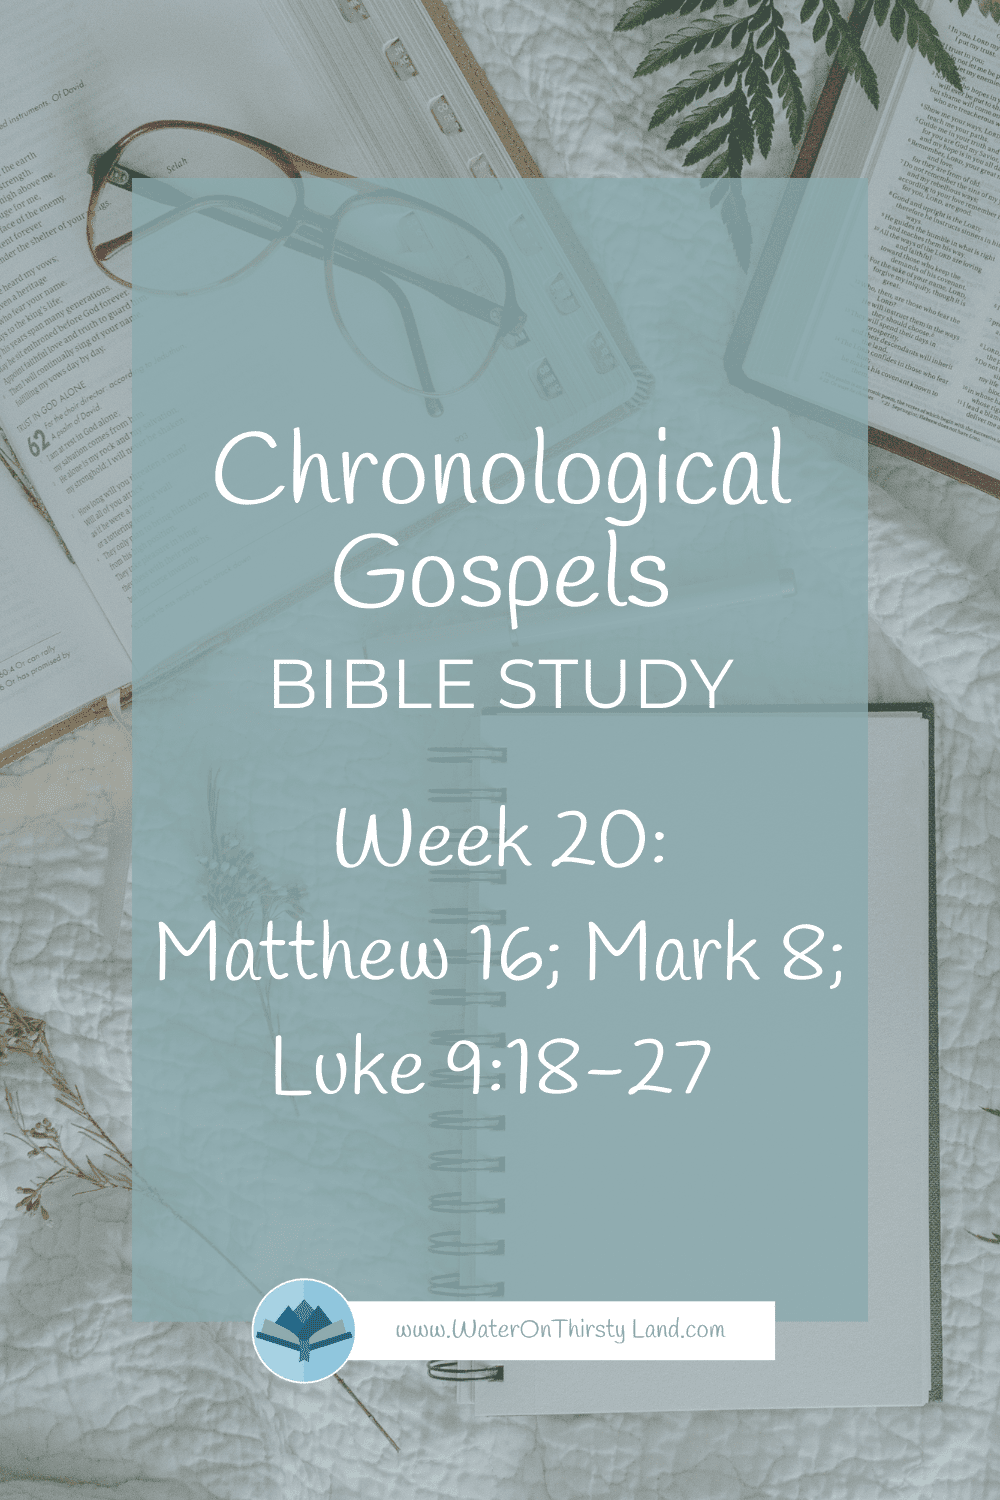 Chronological gospels week 20 Matthew 16; Mark 8; Luke 9:18-27